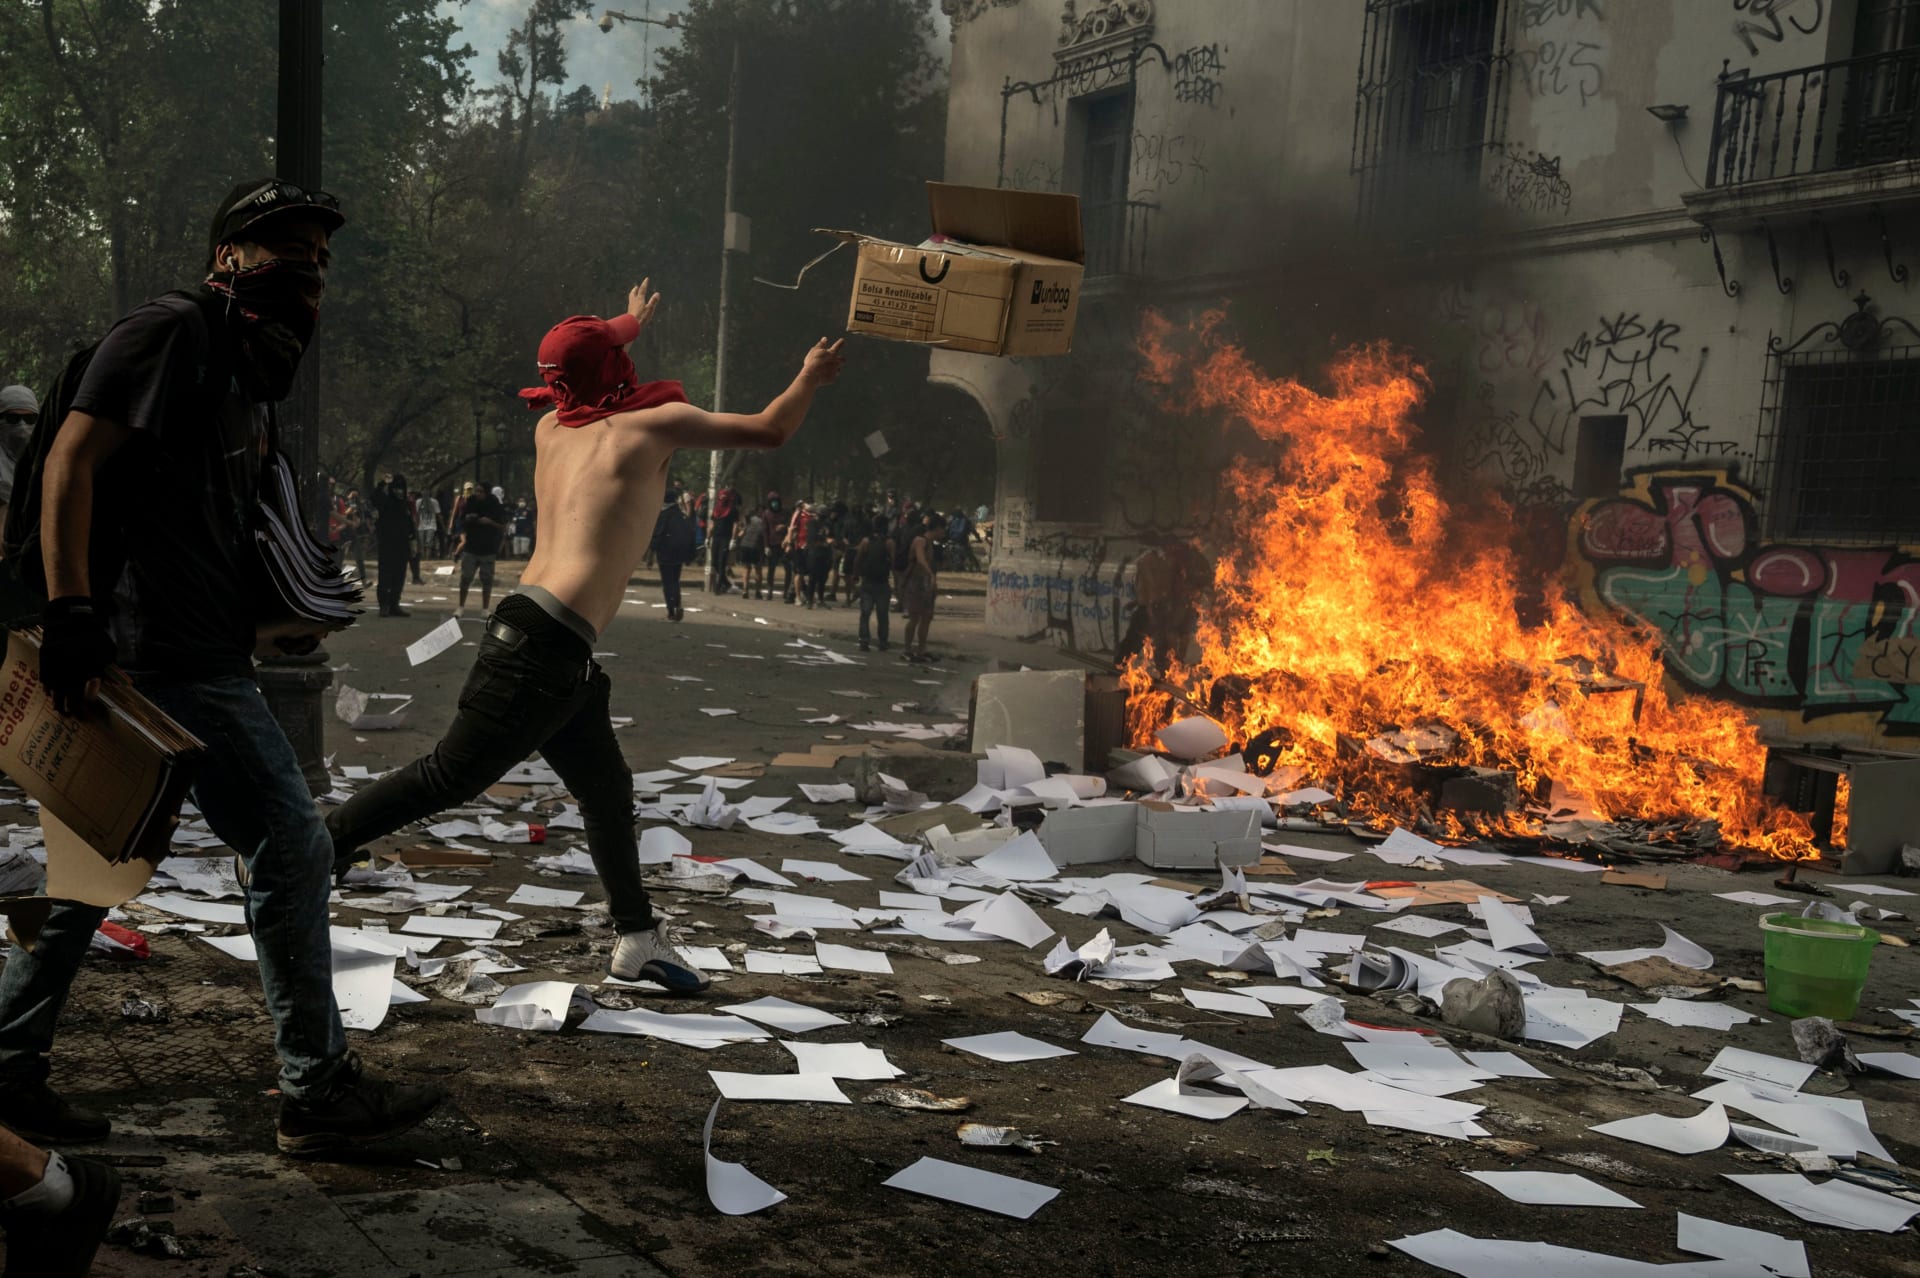 بعد 5 أيام من الاحتجاجات العنيفة.. رئيس تشيلي يعتذر لمواطنيه ويعلن إصلاحات اقتصادية